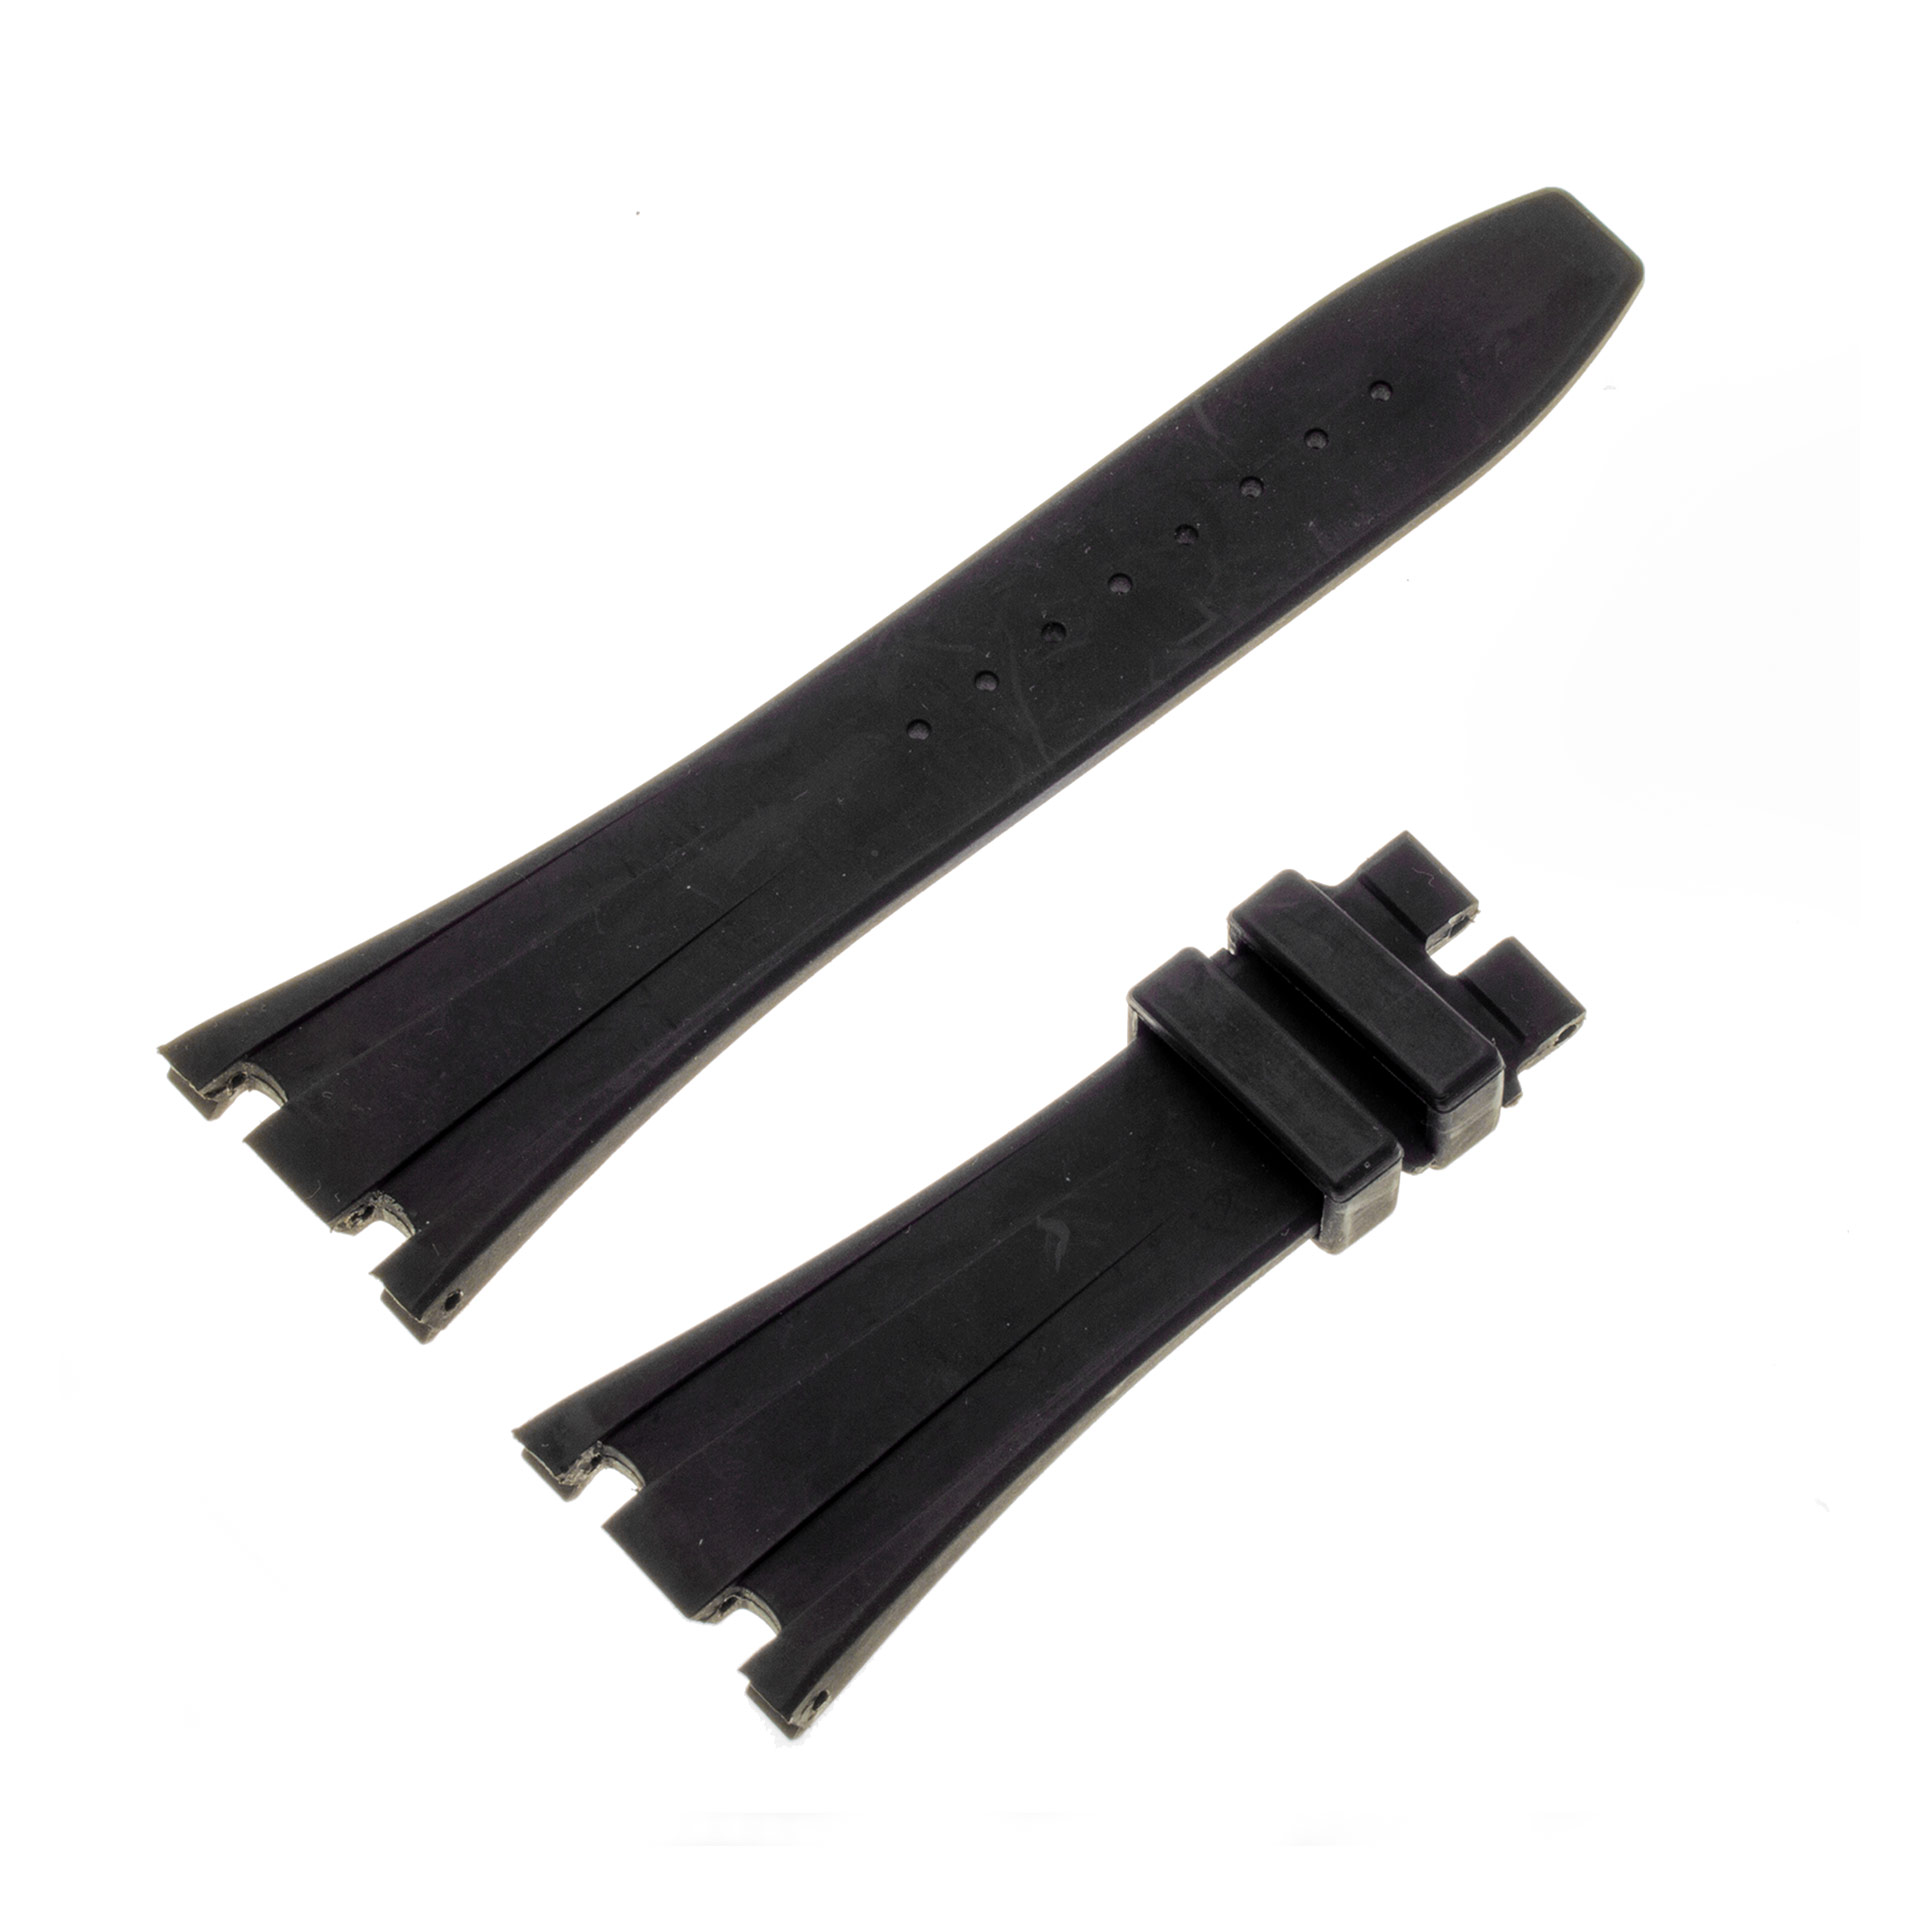 Audemars Piguet black rubber strap band 28mm x 18mm for Royal Oak Offshore